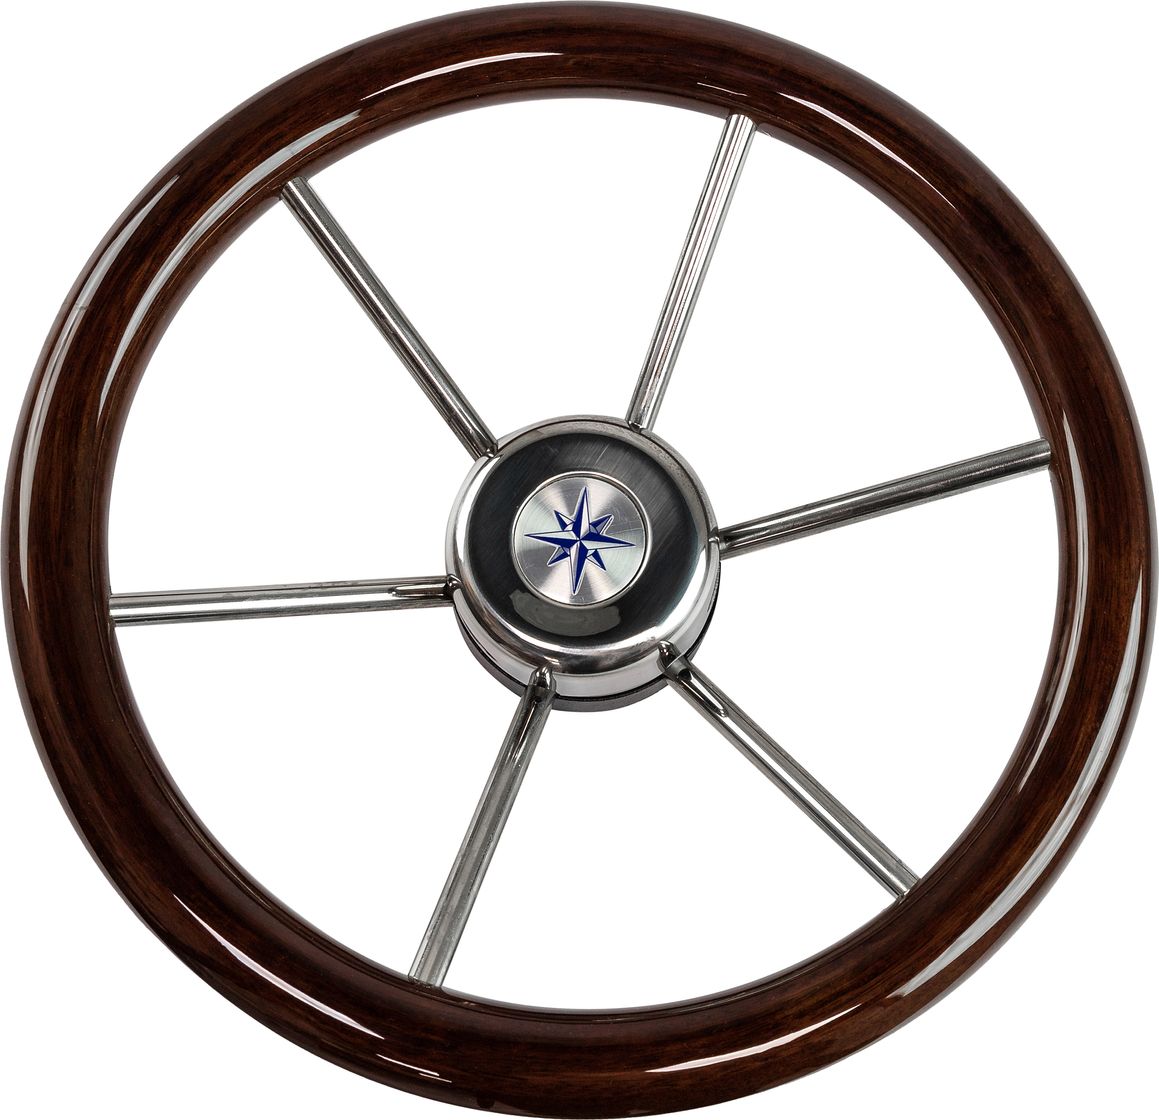 Рулевое колесо LEADER WOOD деревянный обод серебряные спицы д. 340 мм VN7340-33 рулевое колесо orion обод черносиний спицы серебряные д 355 мм vn960101 99